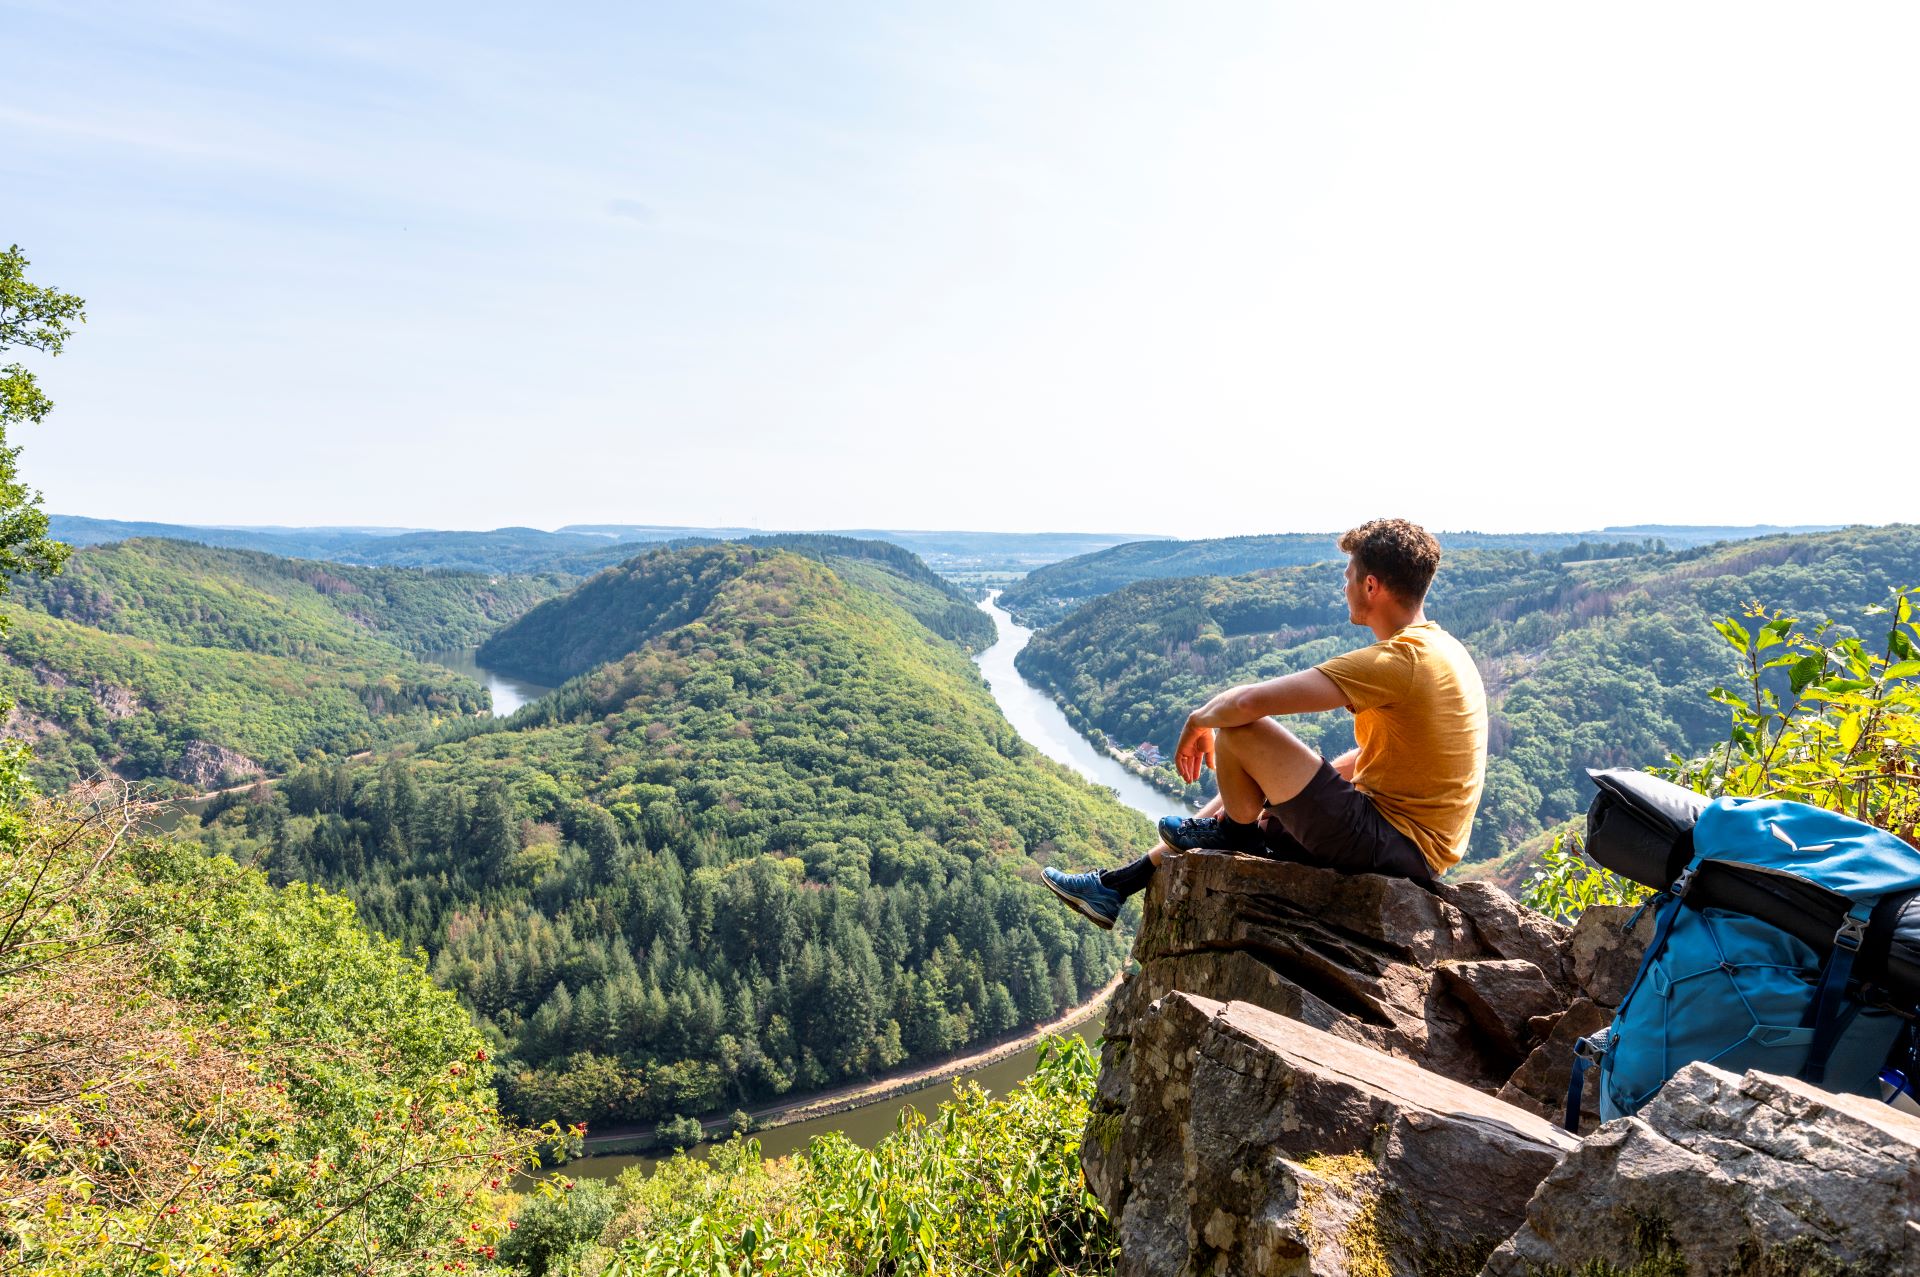 Un homme portant une chemise jaune et un équipement de randonnée est assis sur un affleurement rocheux surplombant la boucle de la Sarre. Le ciel est bleu et les forêts environnantes sont d'un vert éclatant.